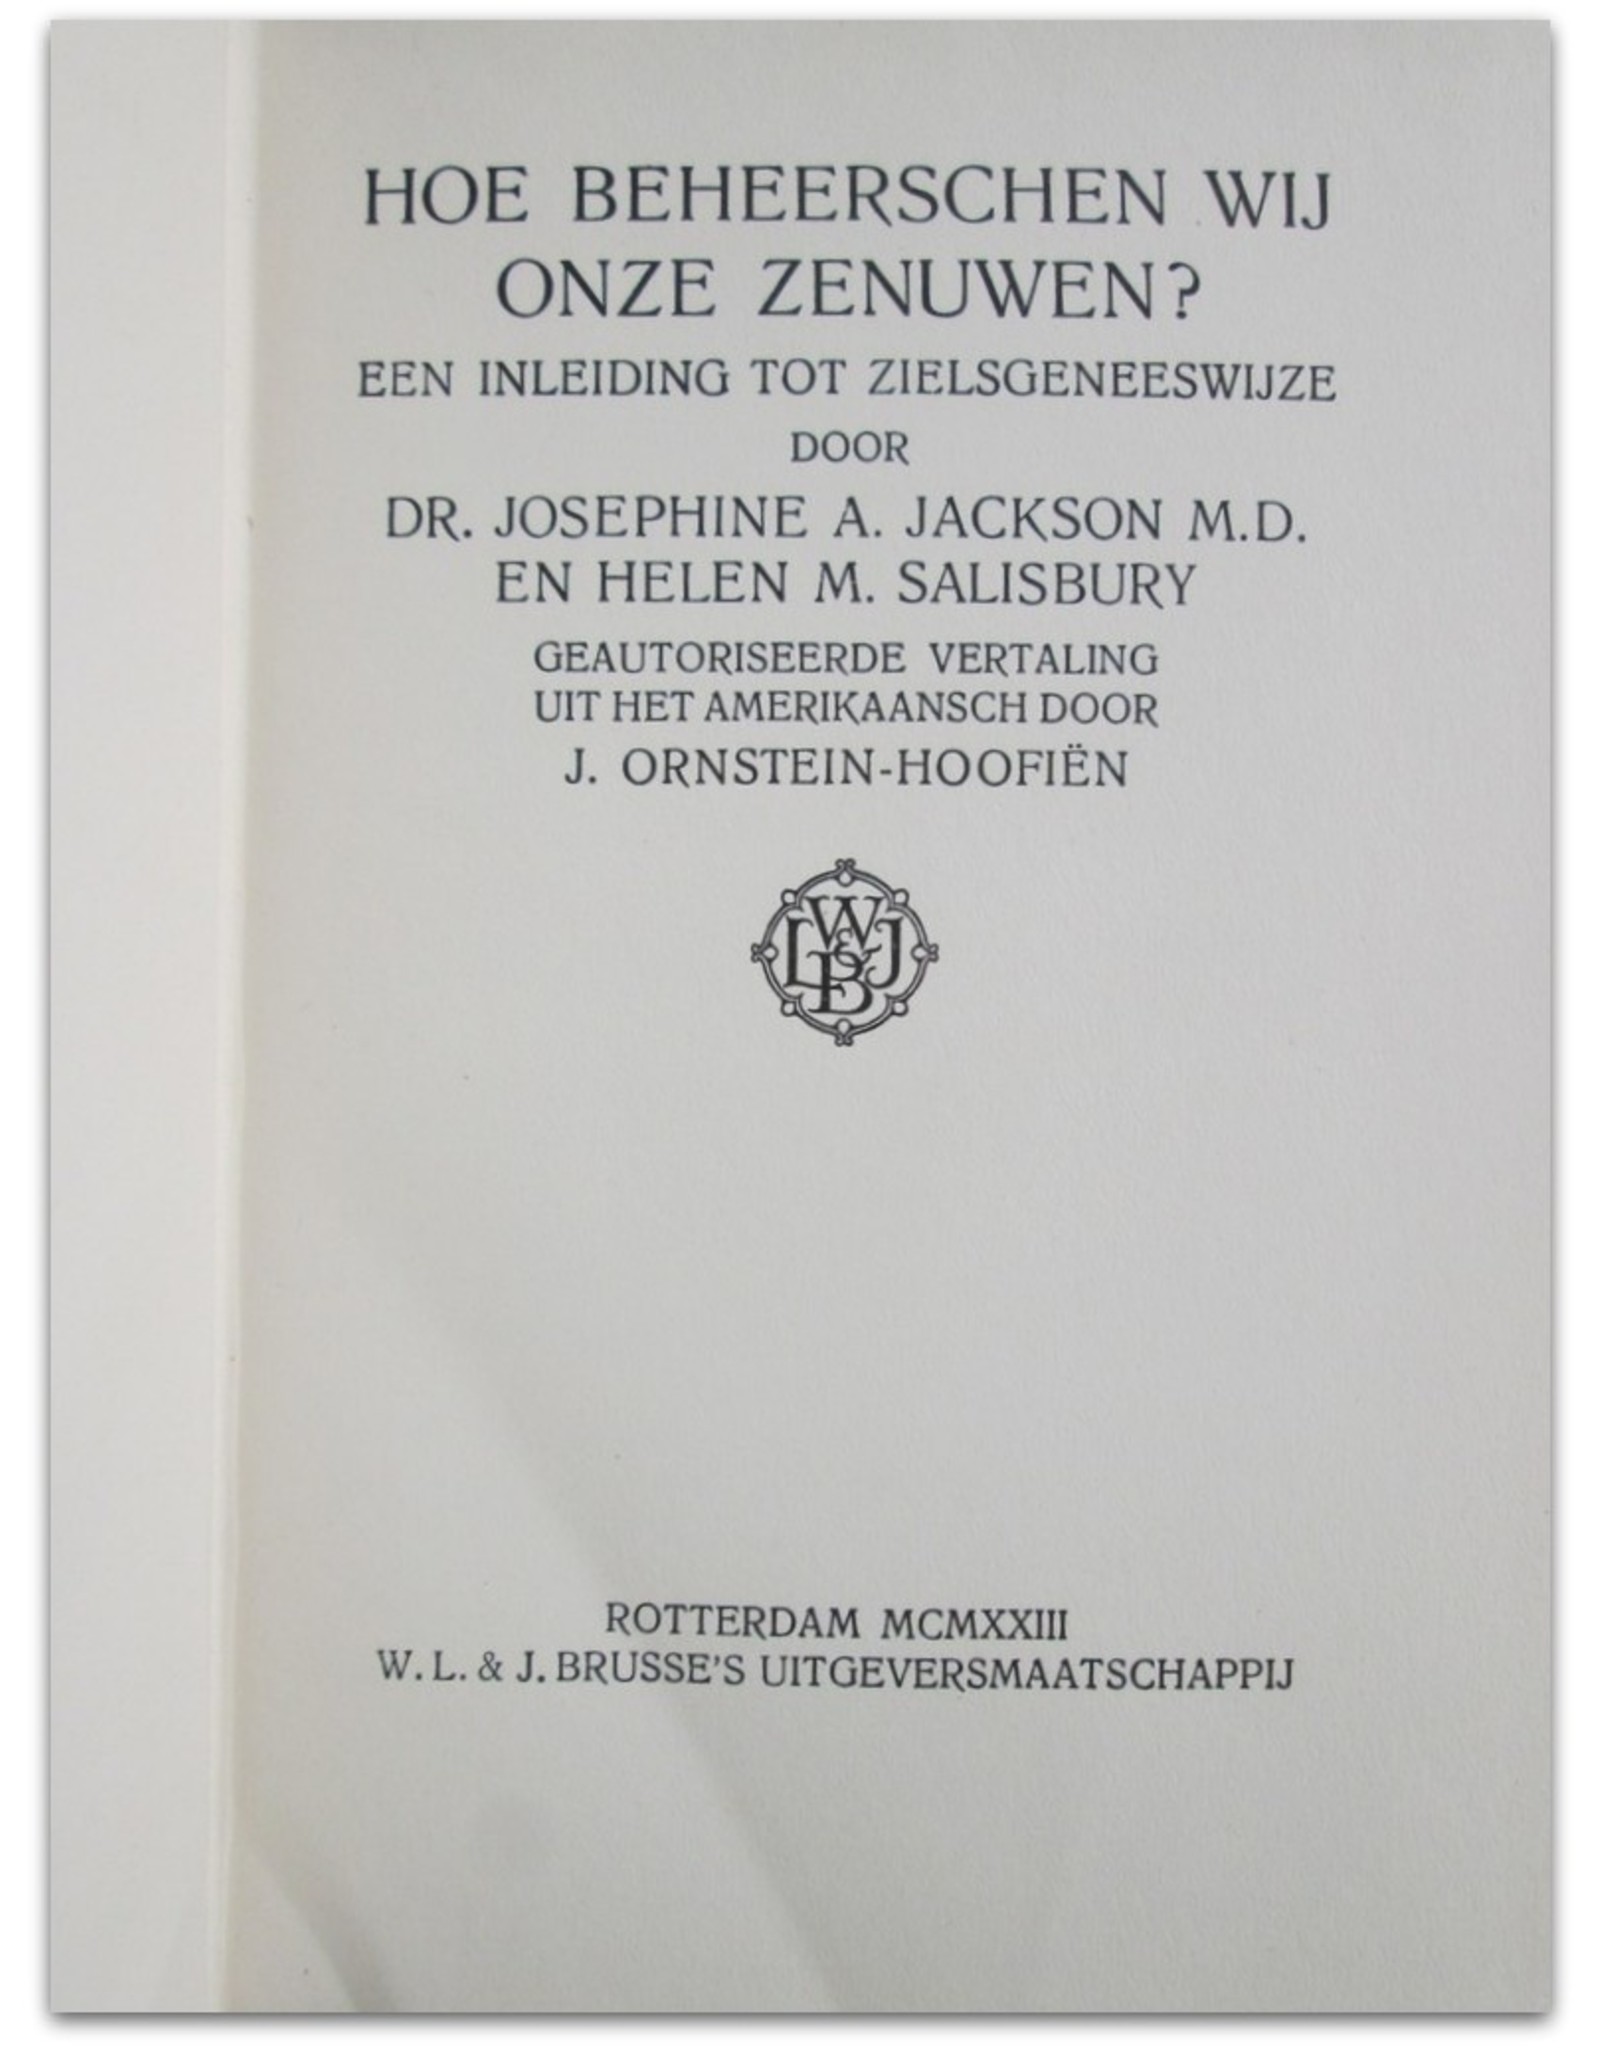 Dr. Josephine A. Jackson M.D. & Helen M. Salisbury - Hoe beheerschen wij onze zenuwen? Een inleiding tot de zielsgeneeswijze.